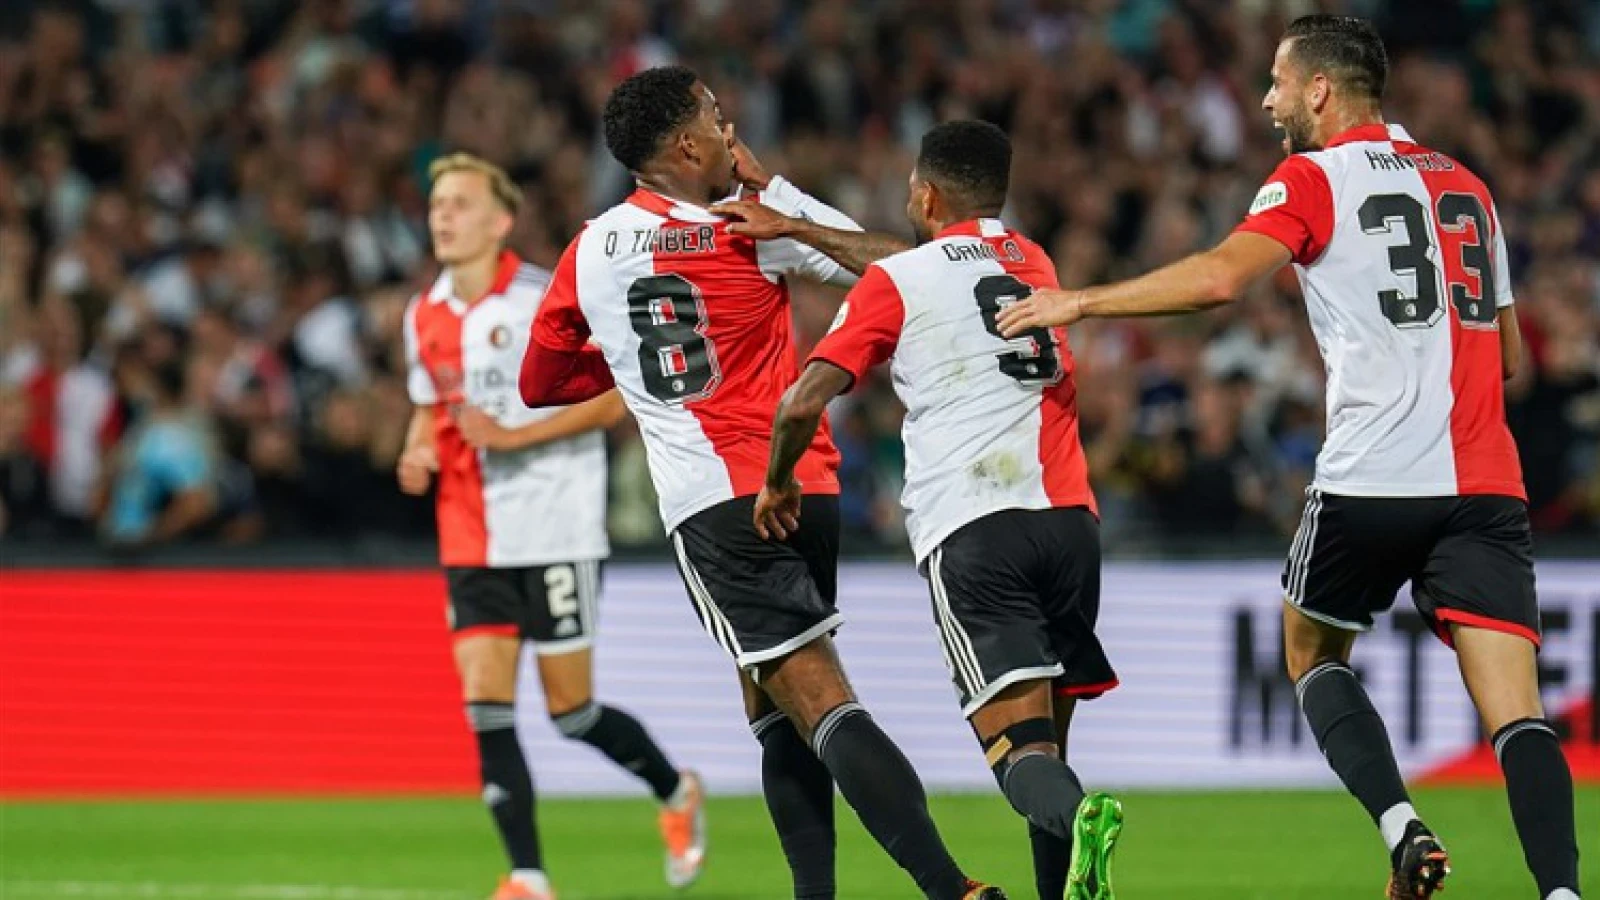 Ruime overwinning voor Feyenoord tegen FC Emmen